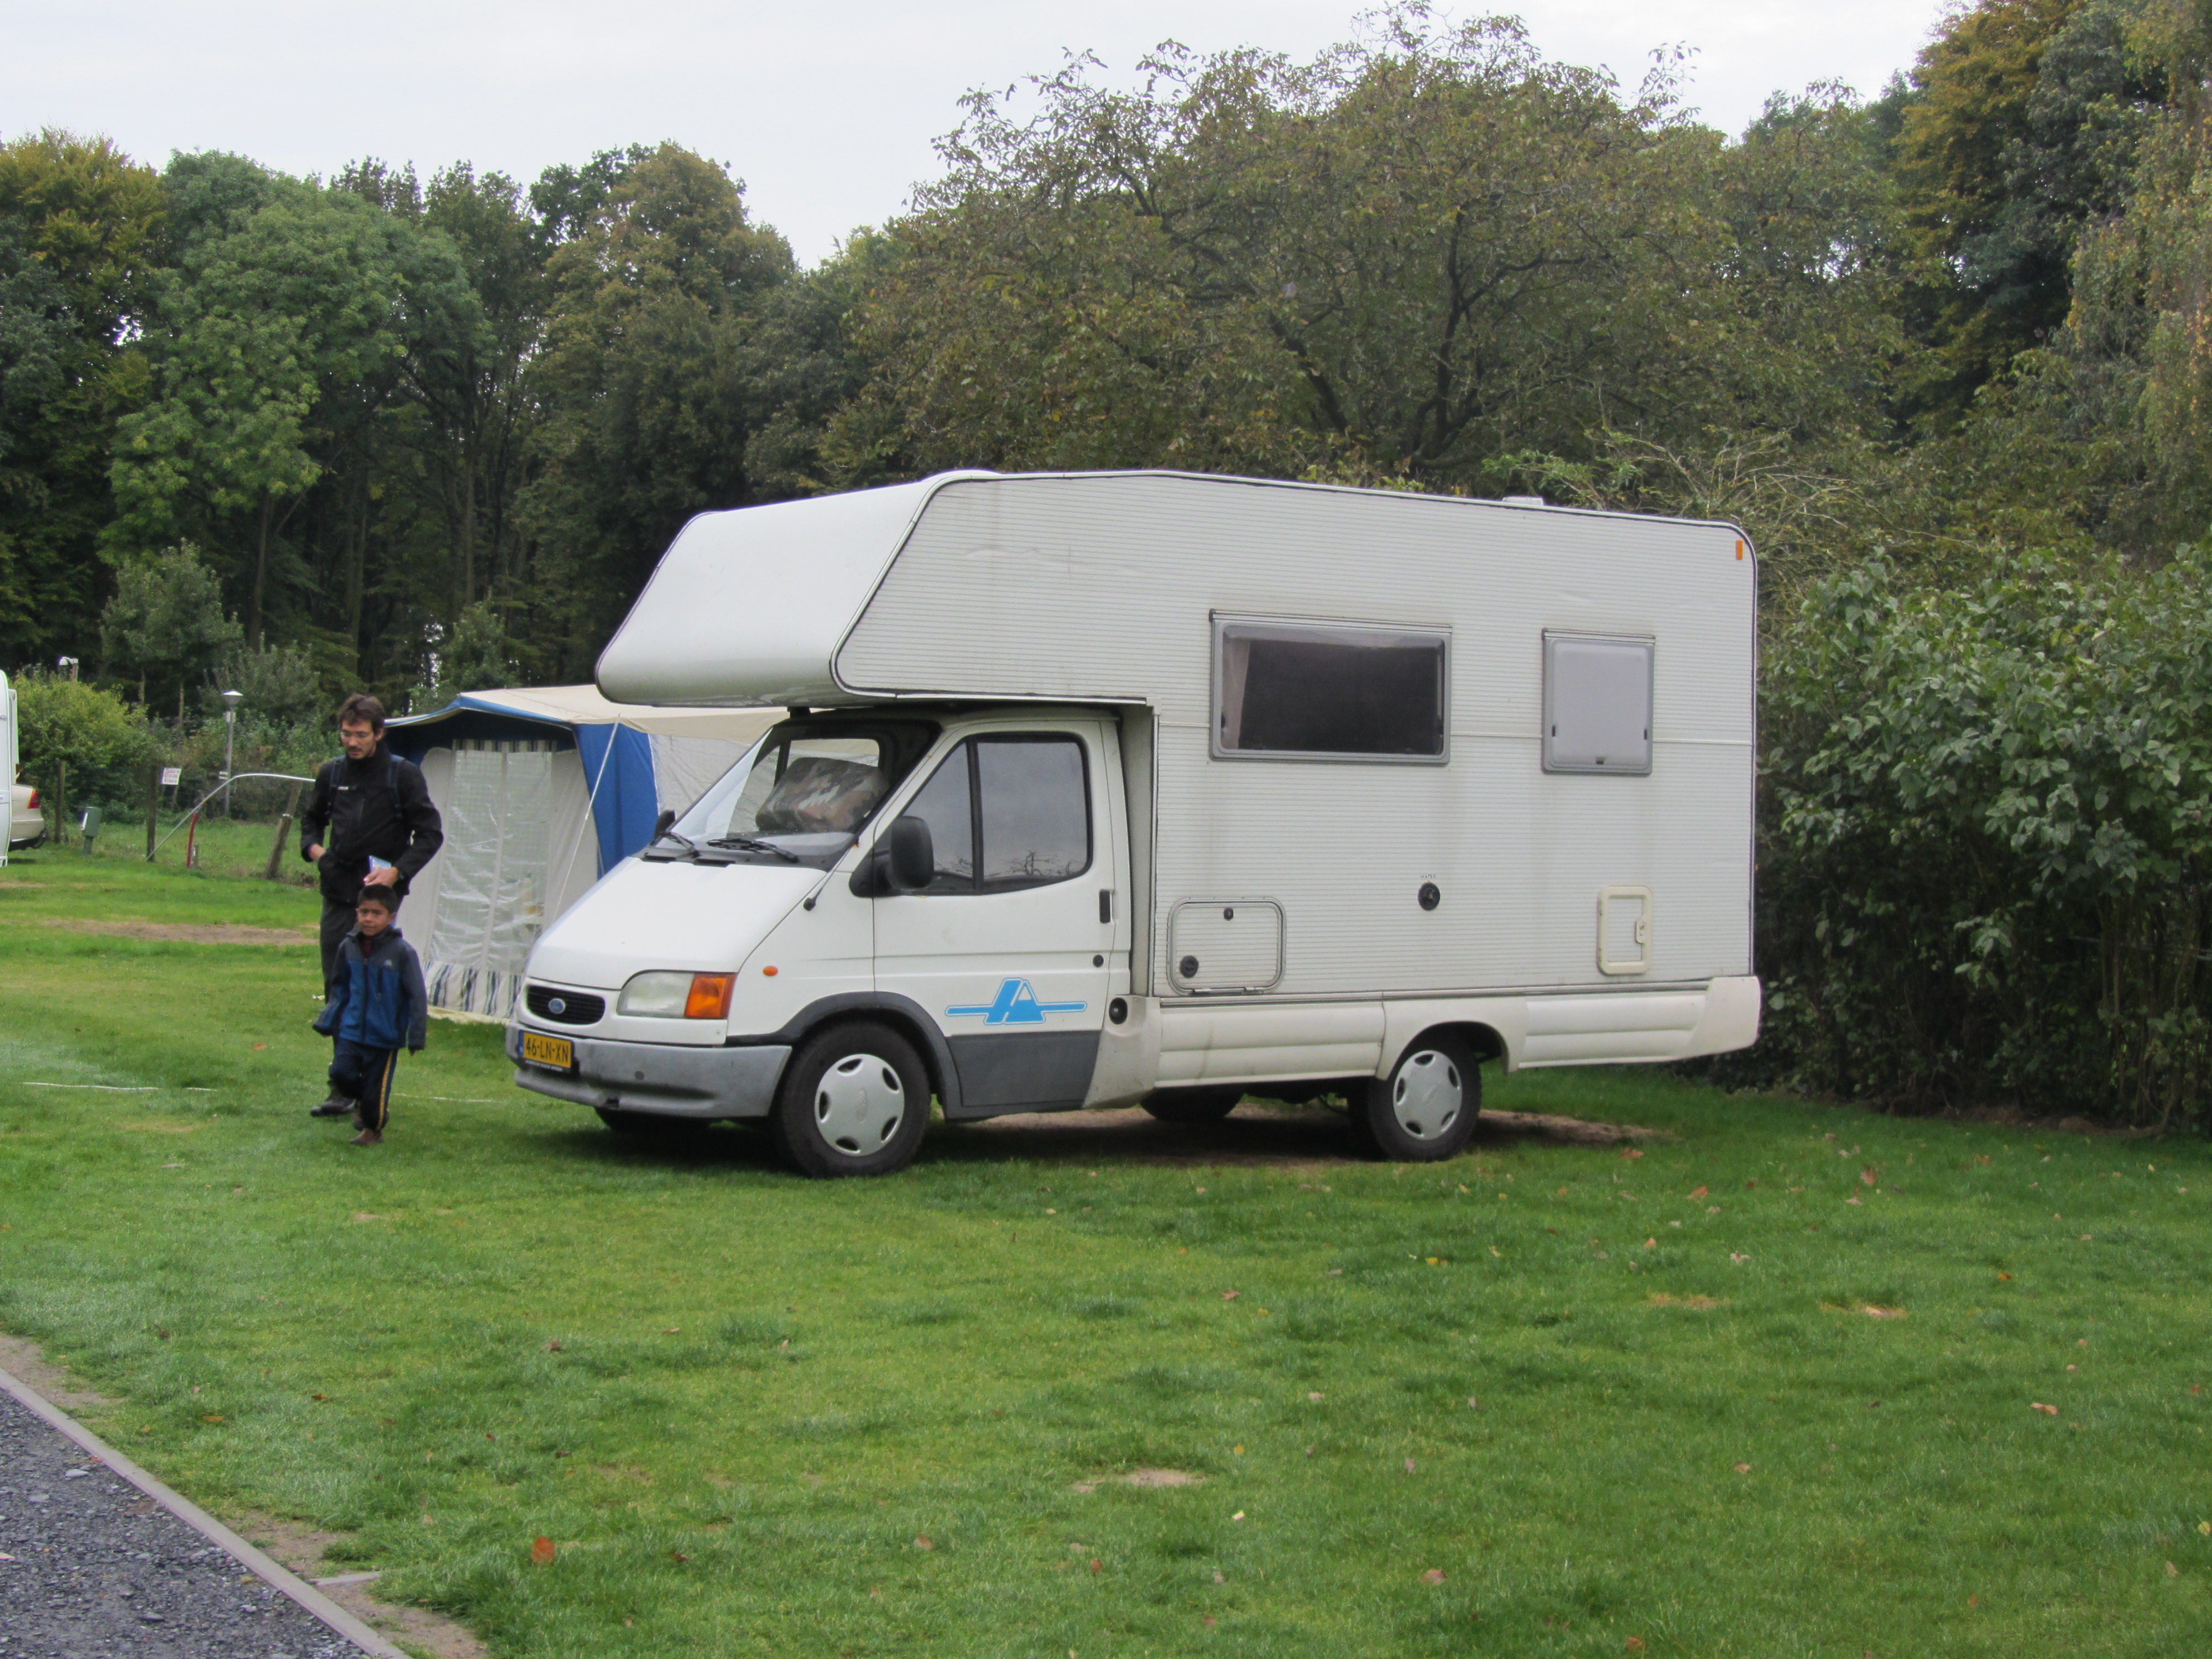 Camping near Brugge